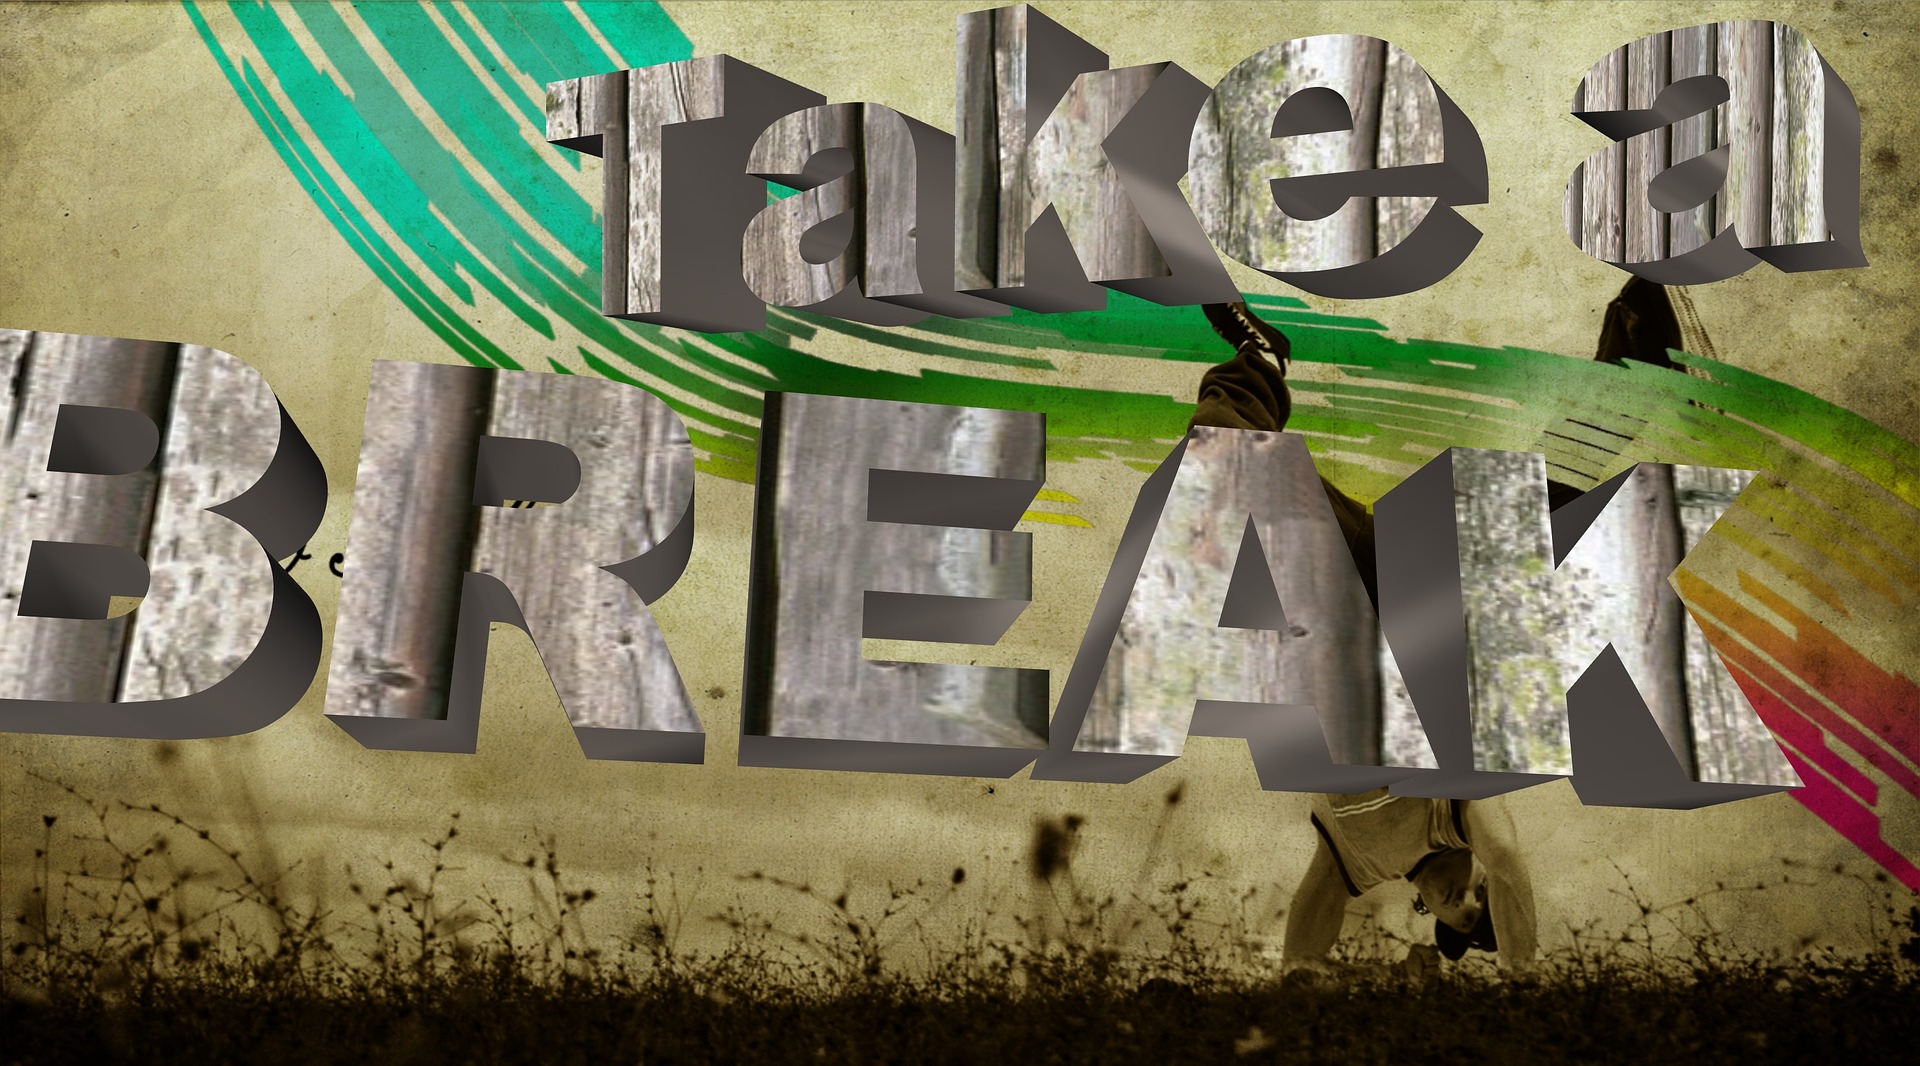 take-a-break-1395919_1920.jpg